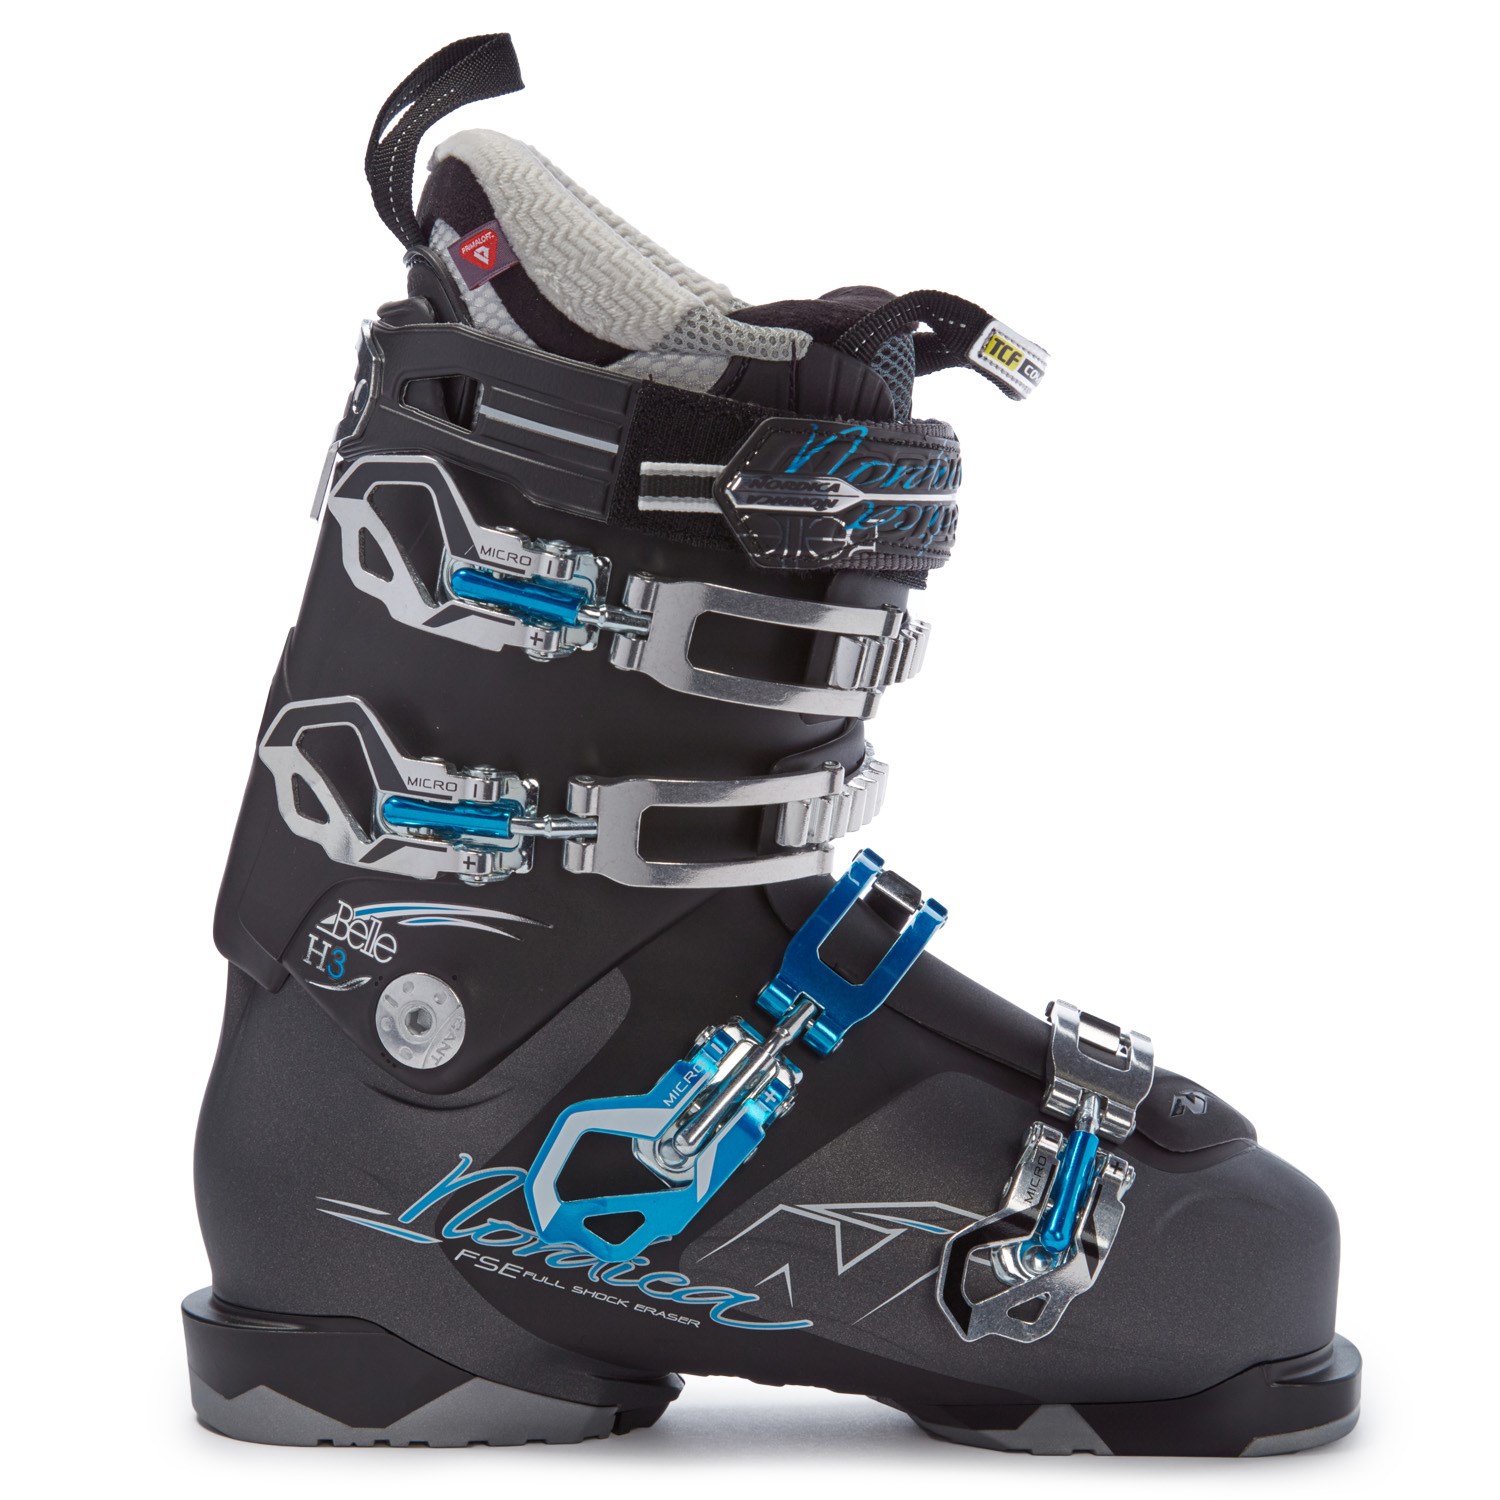 Nordica Belle H3 Ski Boots - Women's 2015 evo